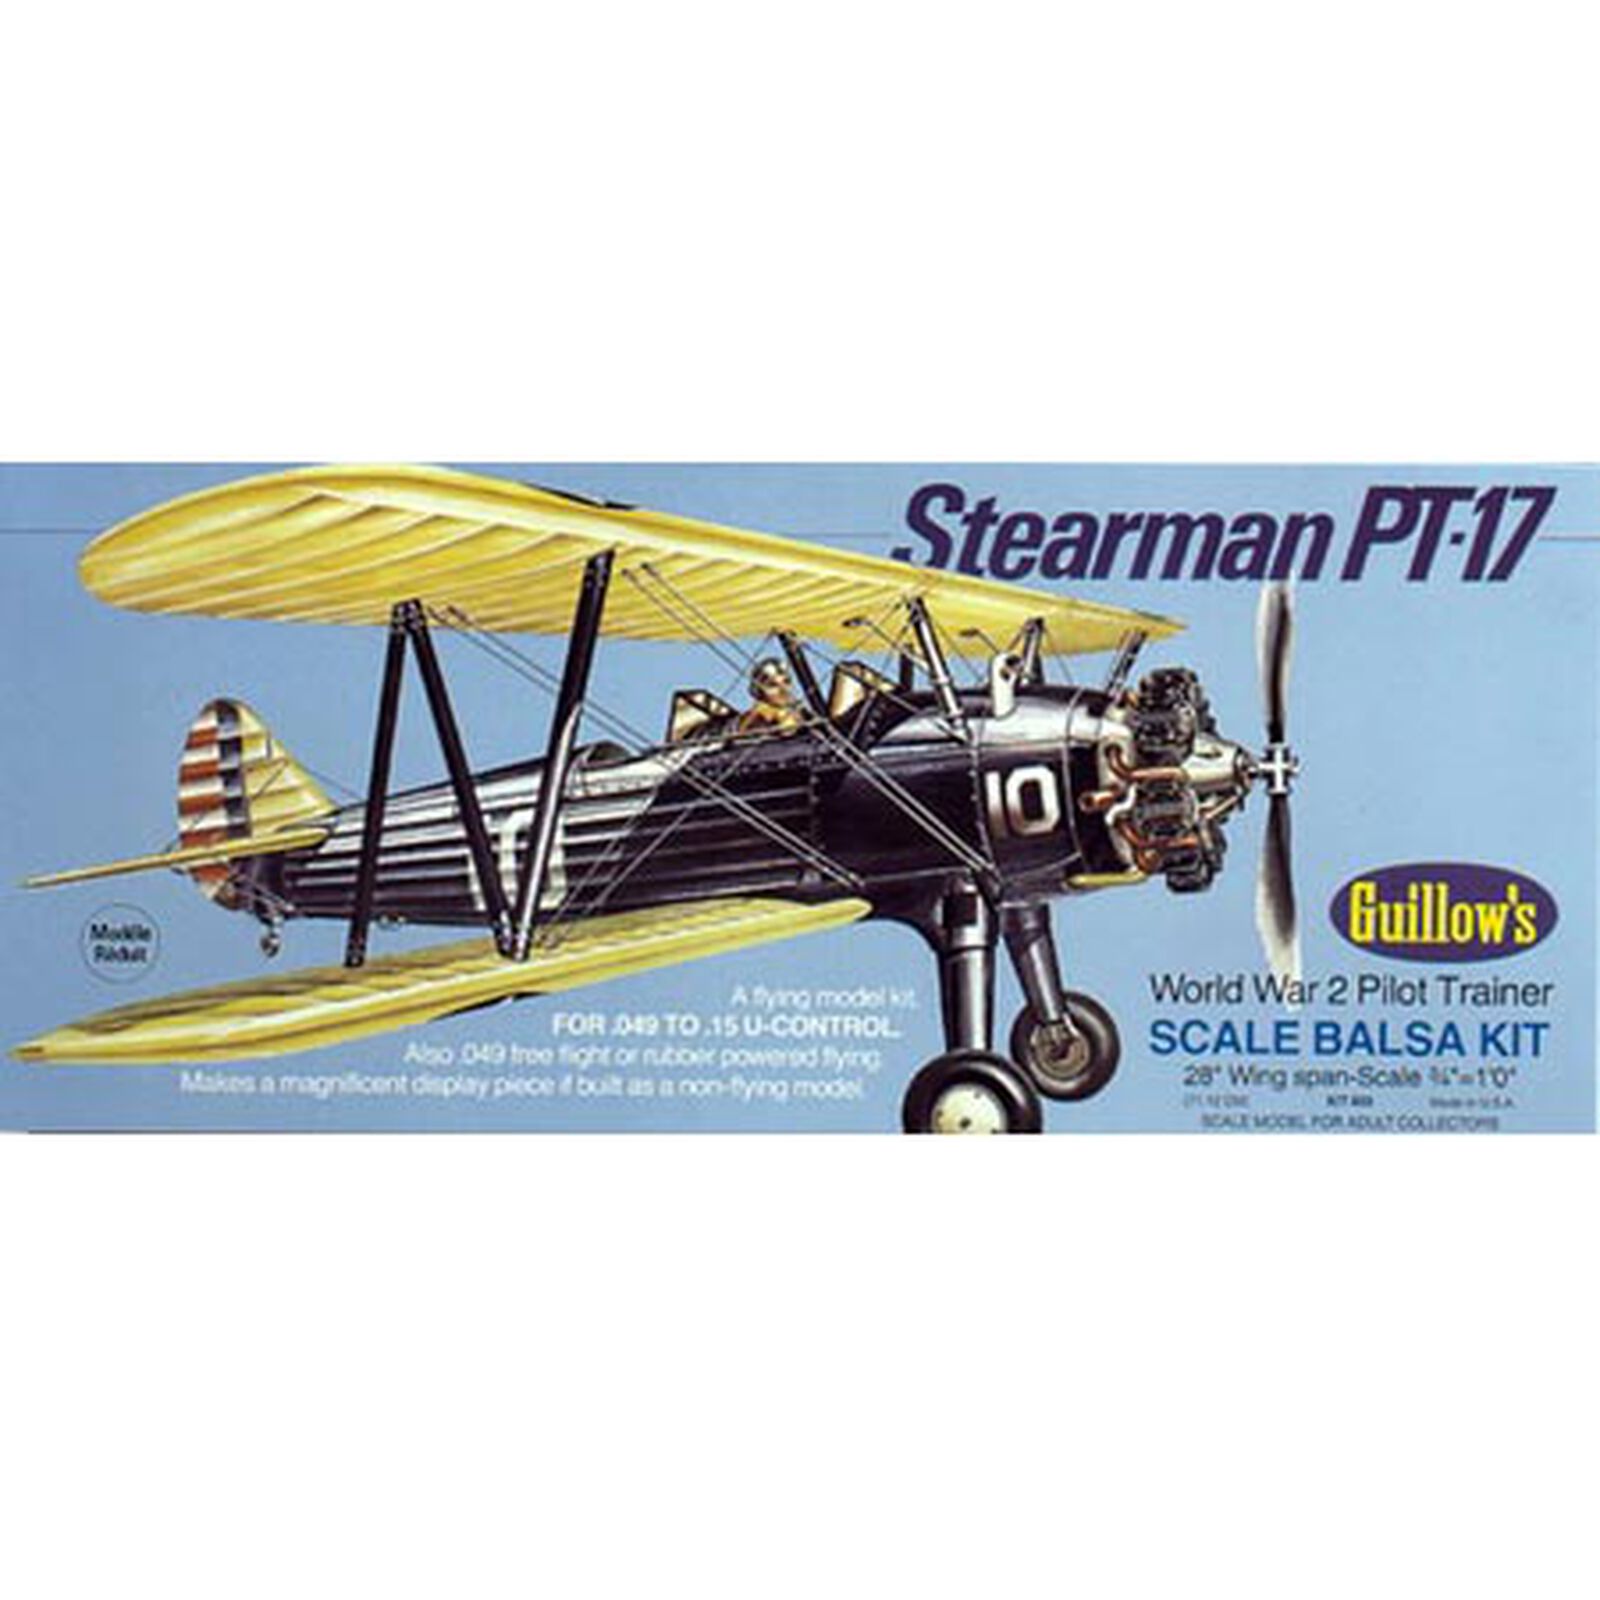 Stearman PT-17 Kit, 28"